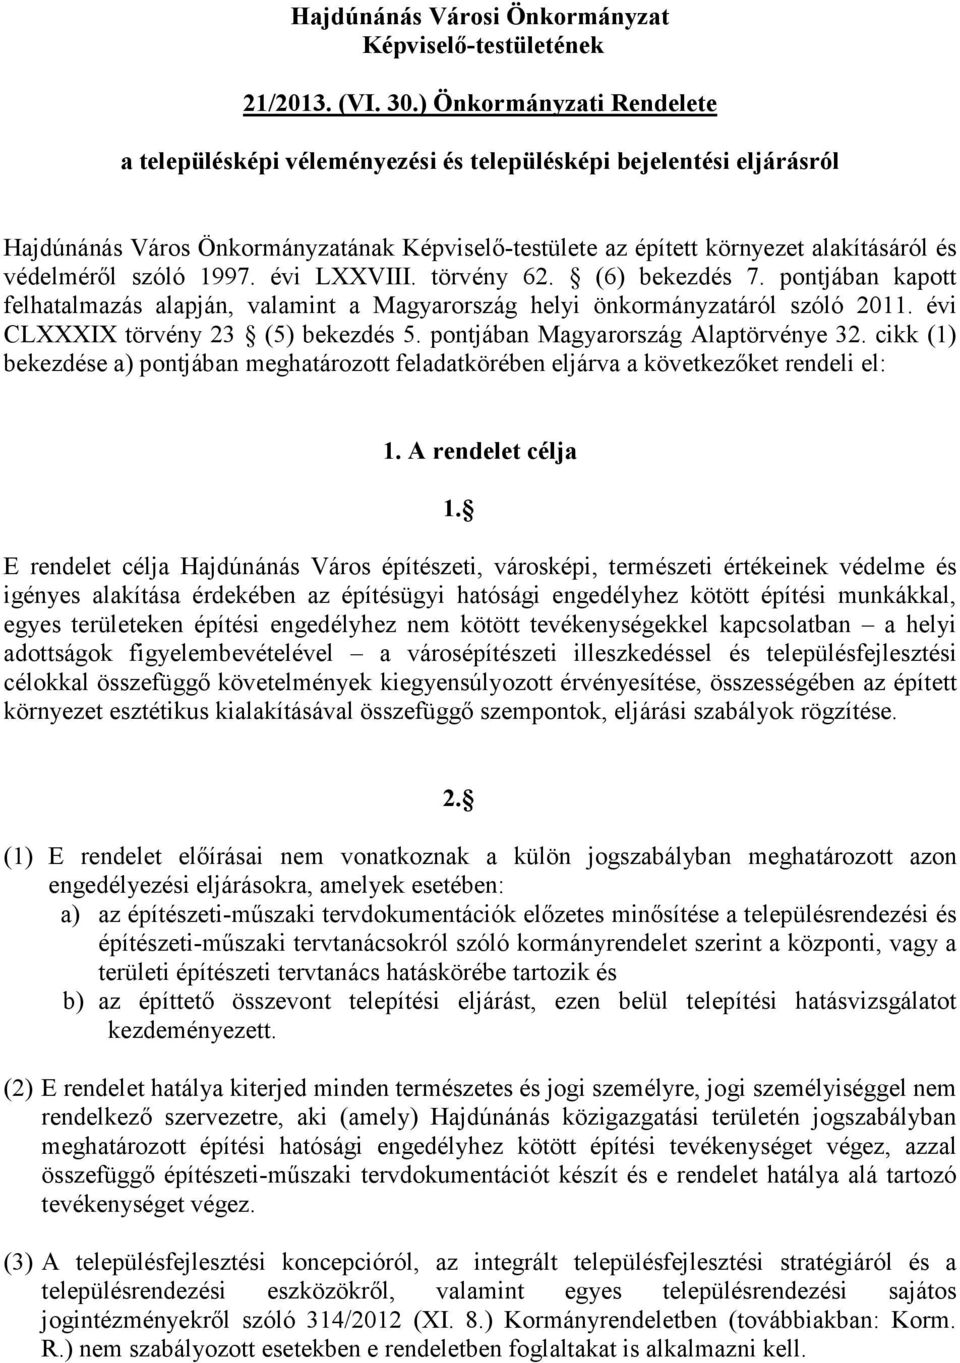 szóló 1997. évi LXXVIII. törvény 62. (6) bekezdés 7. pontjában kapott felhatalmazás alapján, valamint a Magyarország helyi önkormányzatáról szóló 2011. évi CLXXXIX törvény 23 (5) bekezdés 5.